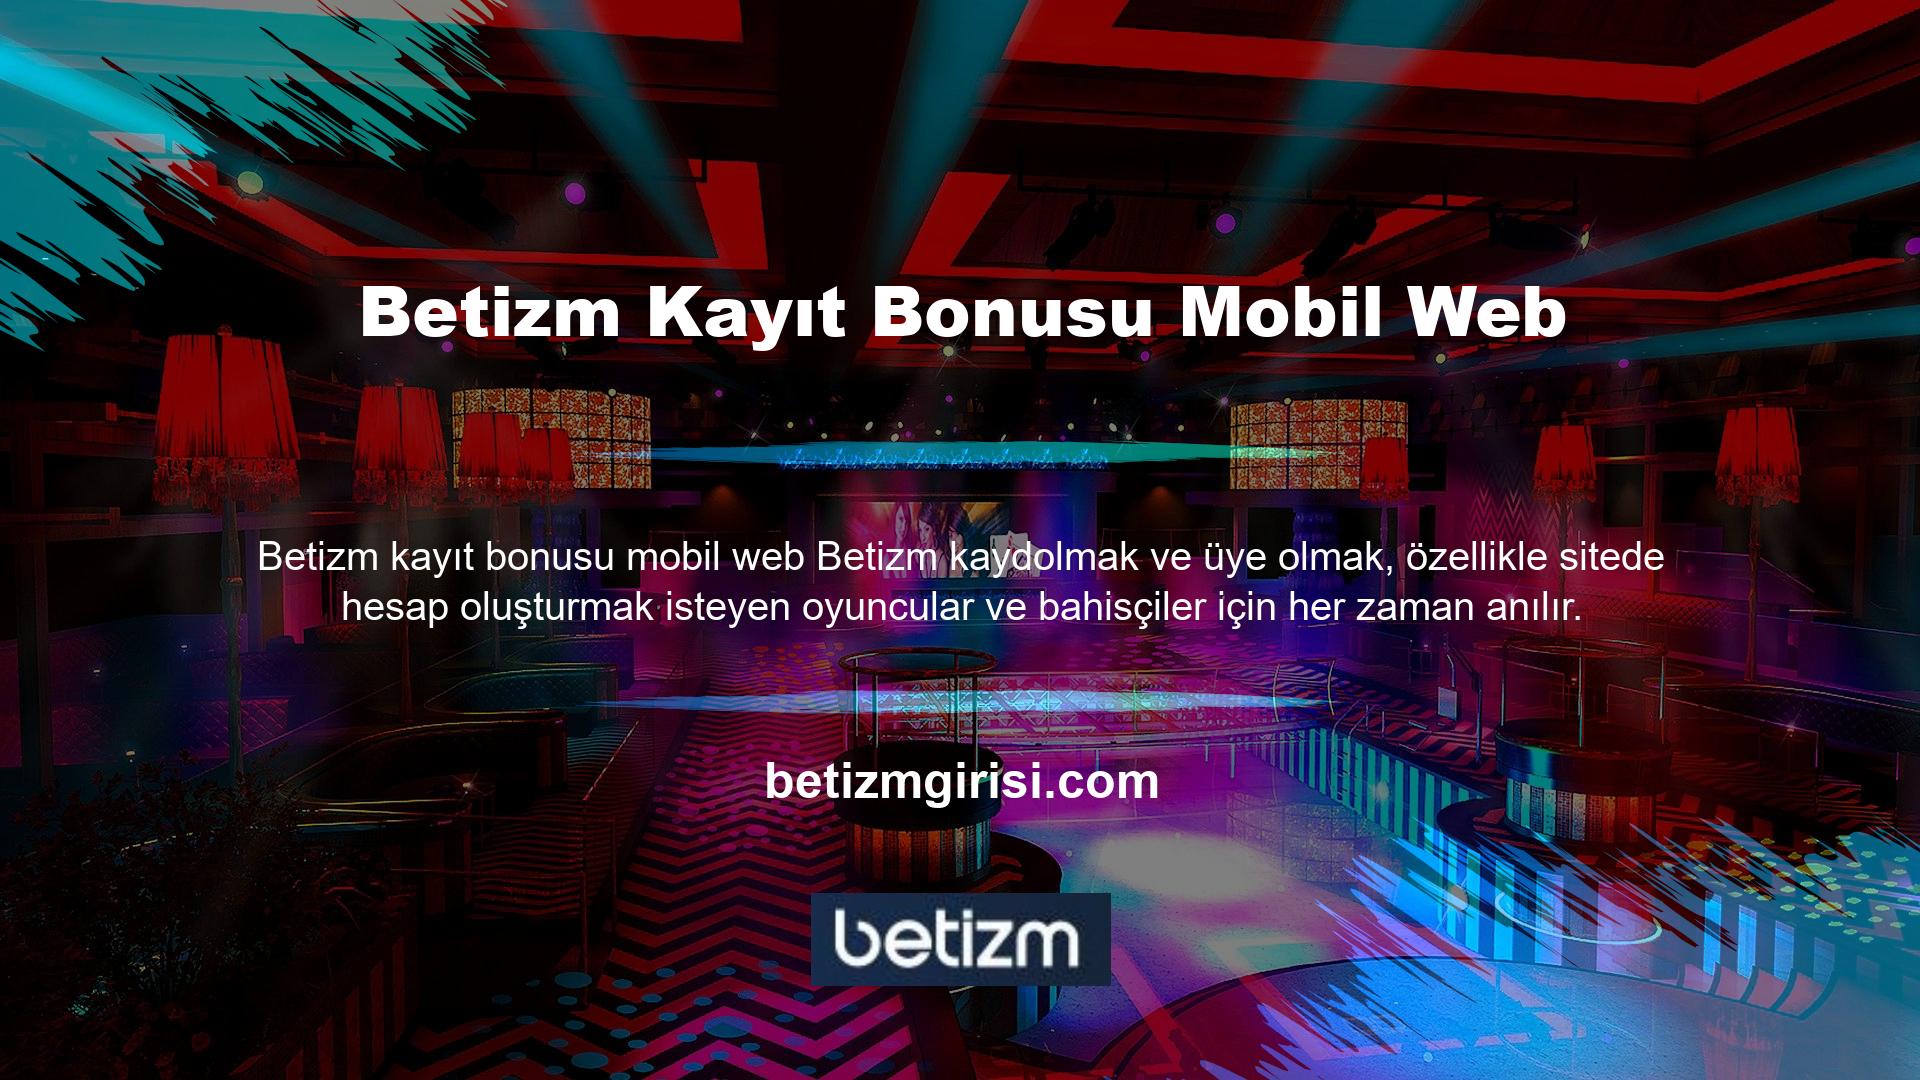 Ayrıca, Betizm kayıt bonusu mobil webine ilişkin kapsamlı bir güven değerlendirmesi yürütüyoruz